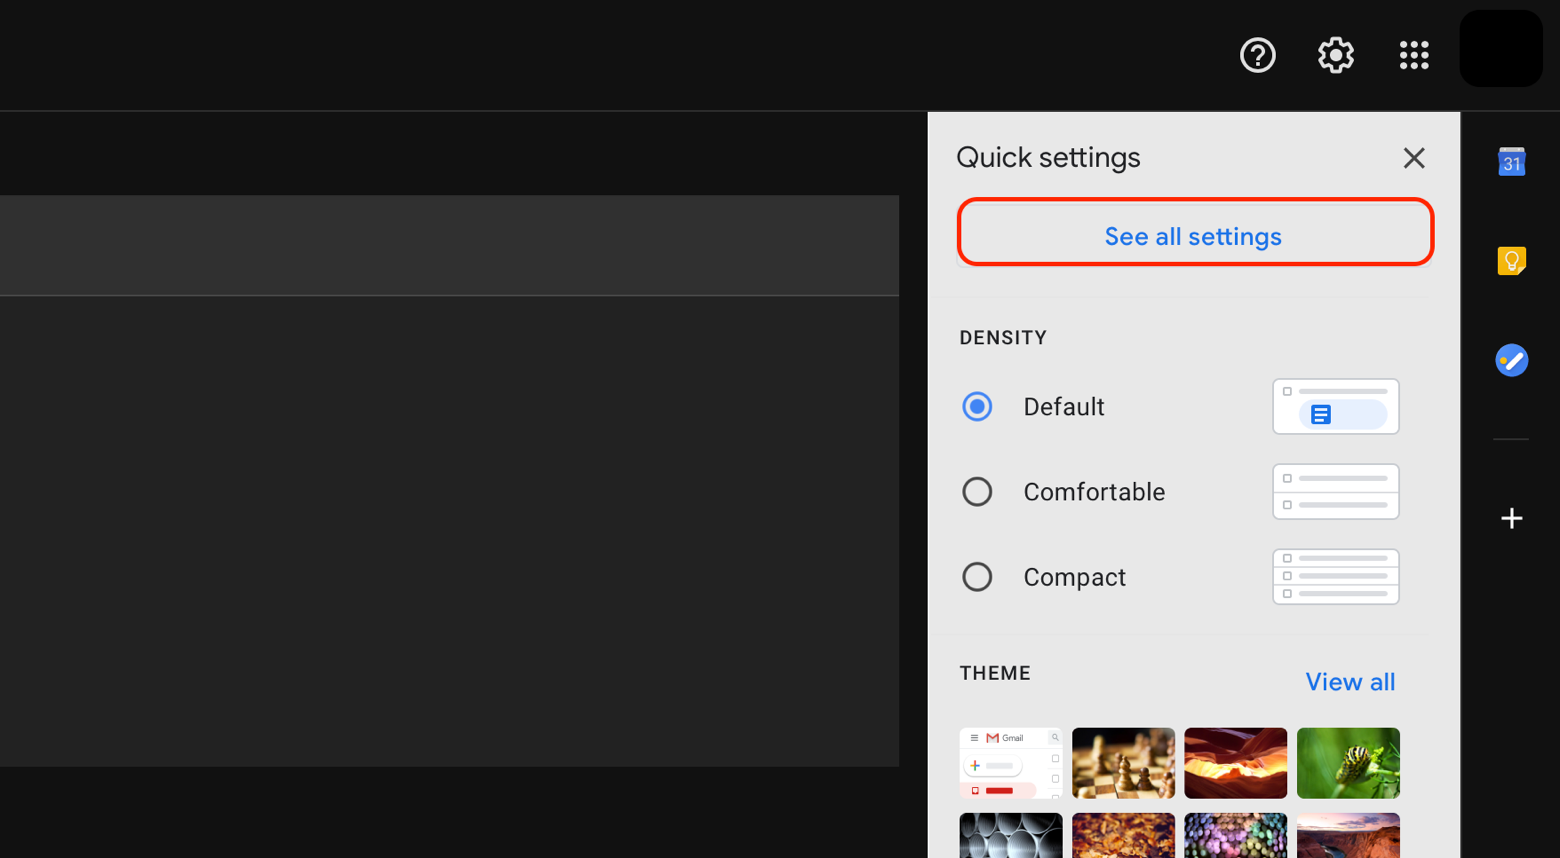 Gmail settings menu